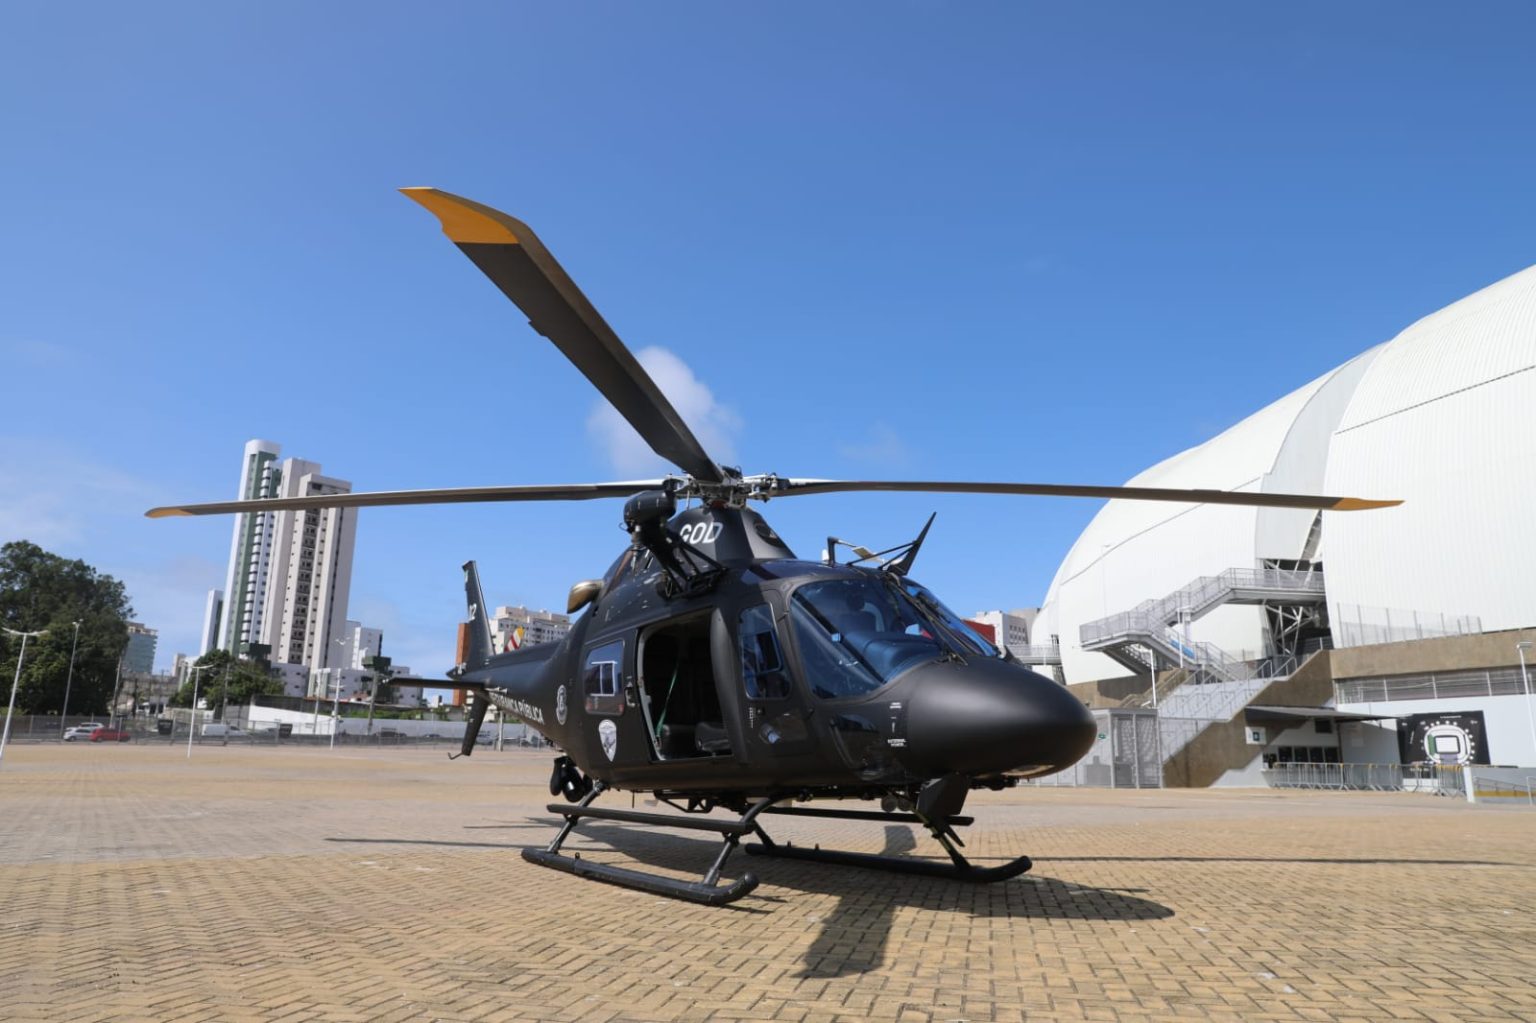 Helicóptero Potiguar 02 está sendo utilizado em patrulhamento aéreo em Mossoró - Foto: Sandro Menezes